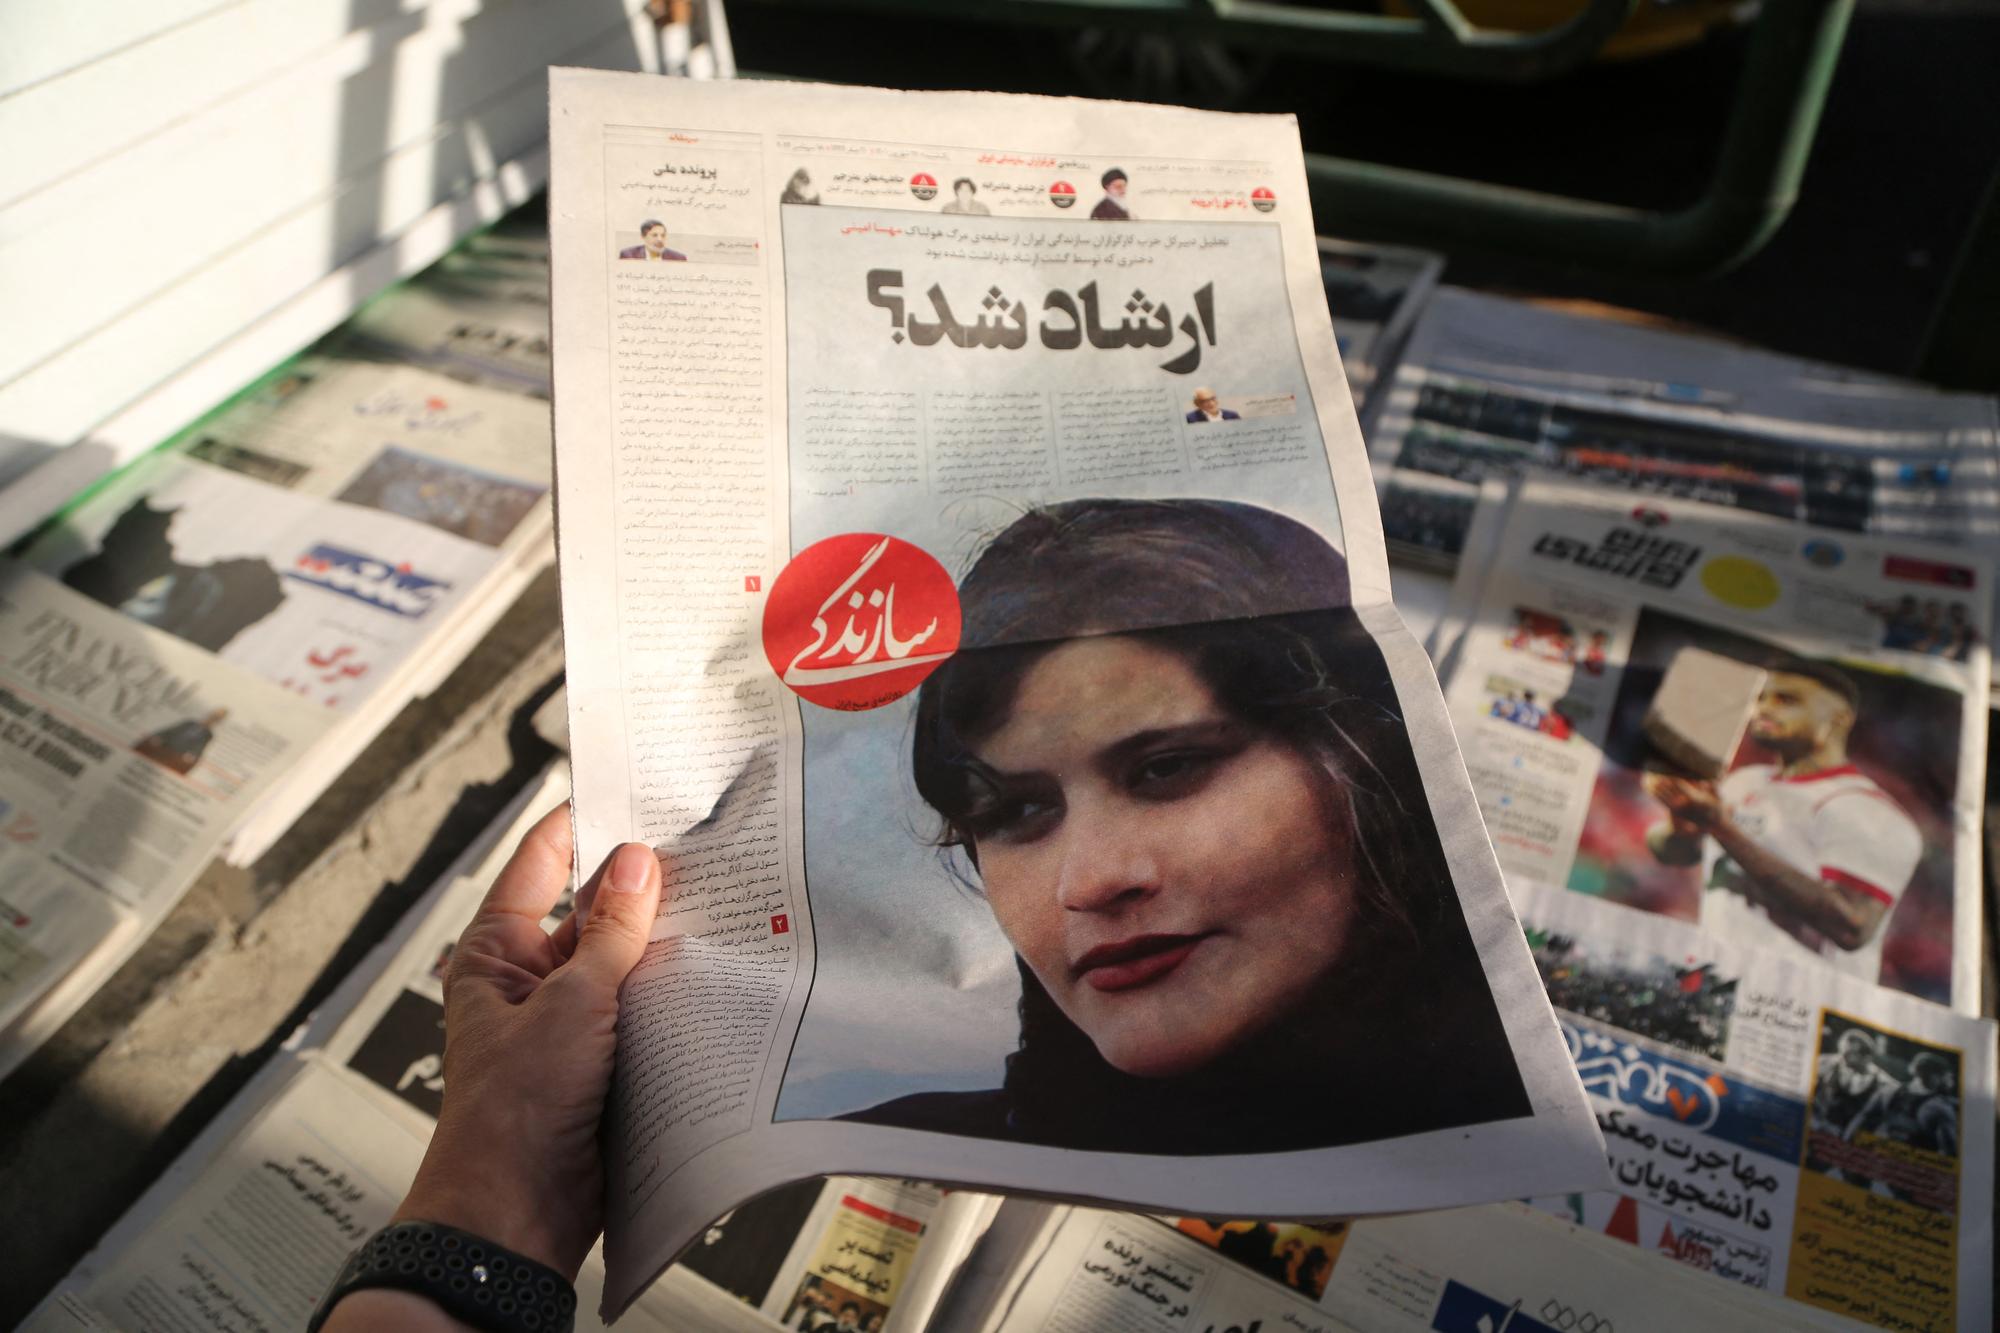 Le décès de Mahsa Amini, 22 ans, a été rapporté dans les journaux iraniens. [AFP - Fatemeh Bahrami / Anadolu Agency]